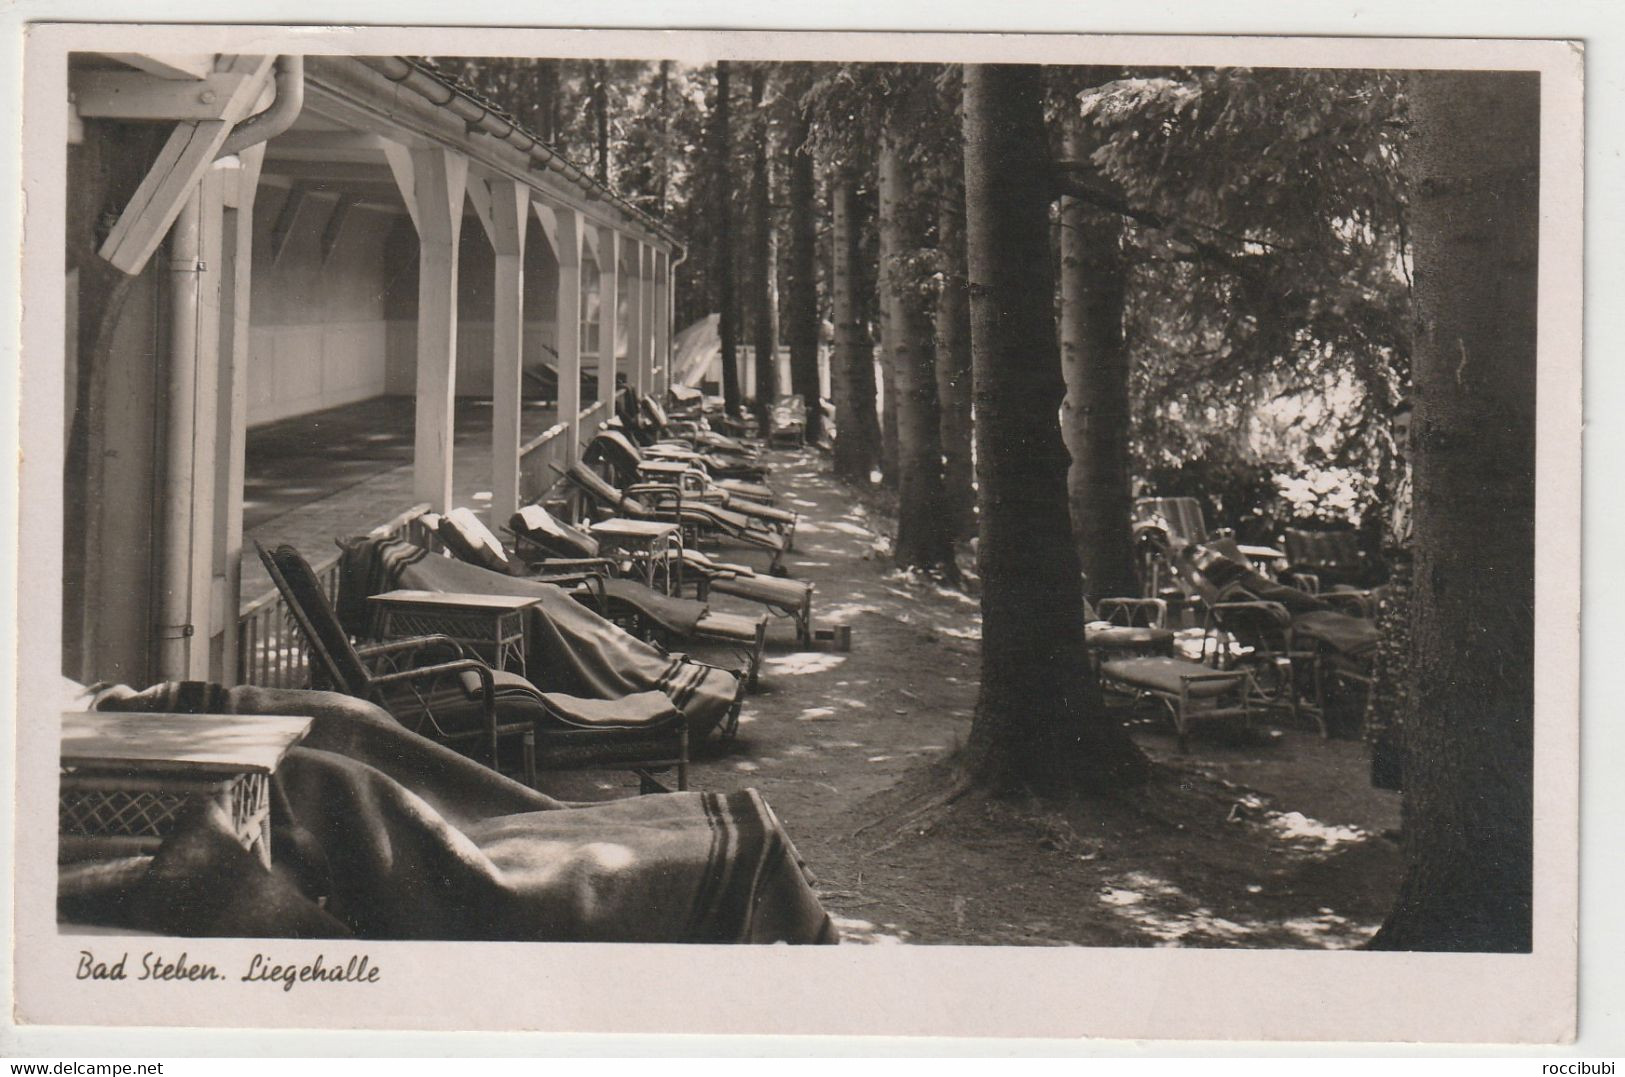 Bad Steben, Liegehalle, 1942, Bayern - Bad Steben